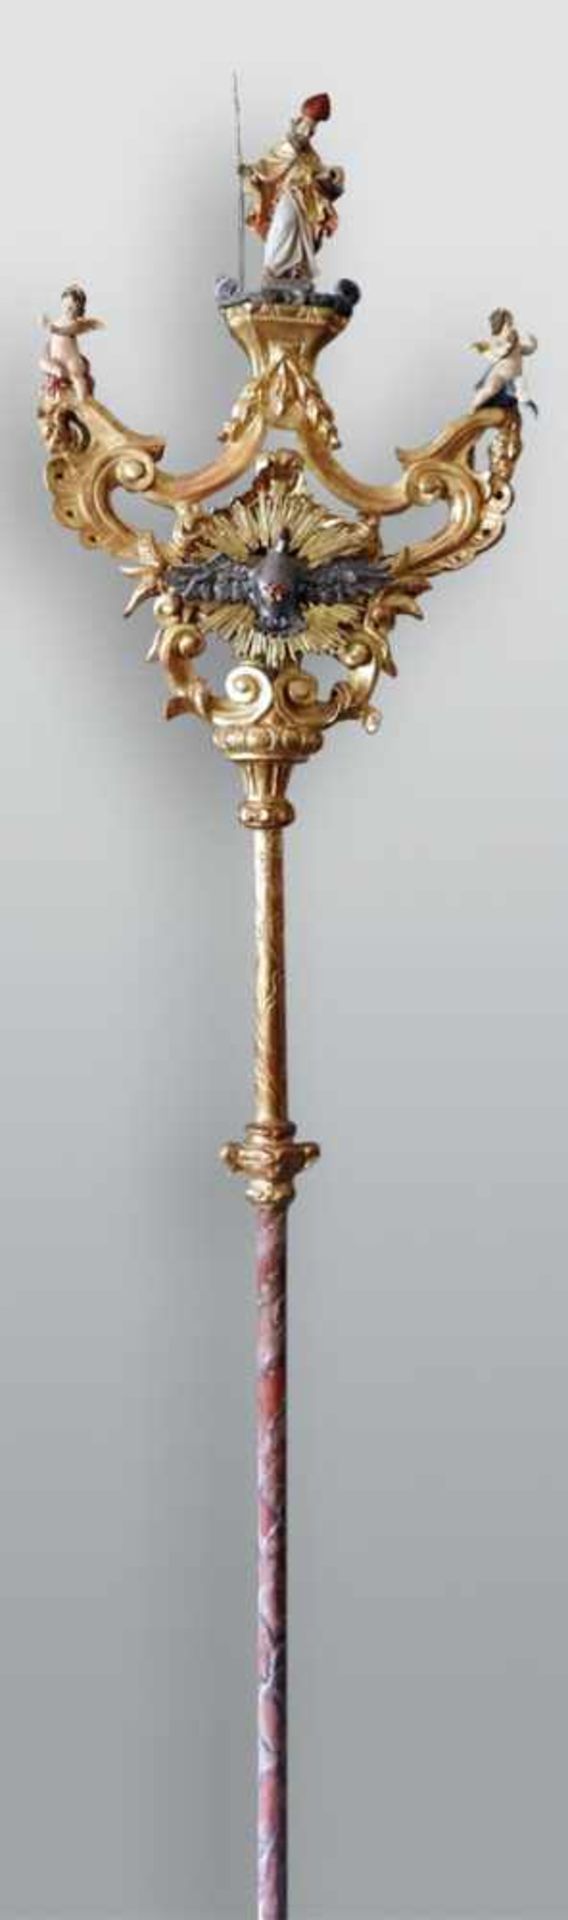 Wallfahrtstange mit Heiligem Geist Holz geschnitzt, polychrom bemalt und gold staffiert. Darstellung